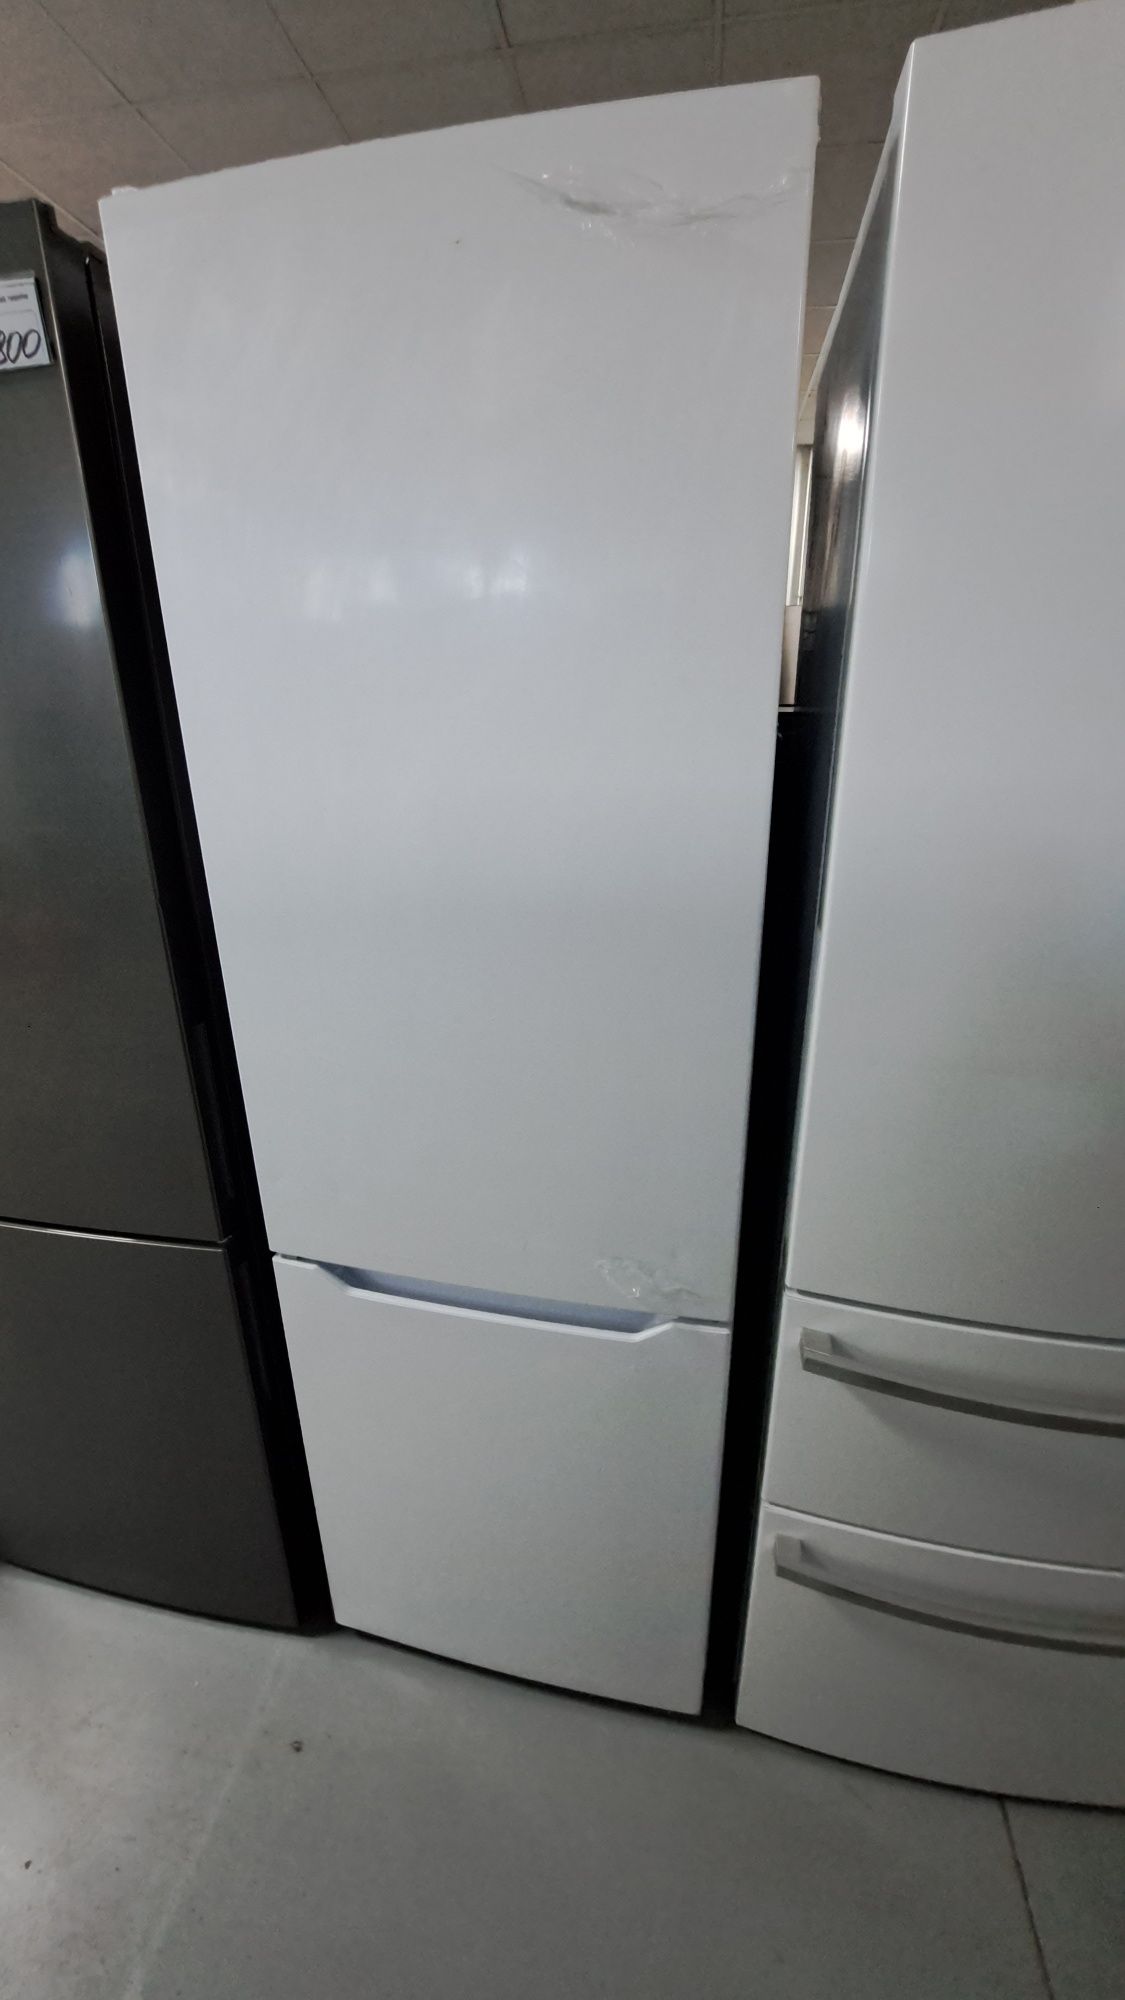 Холодильник Miele fkg76 білий невисокий Германія